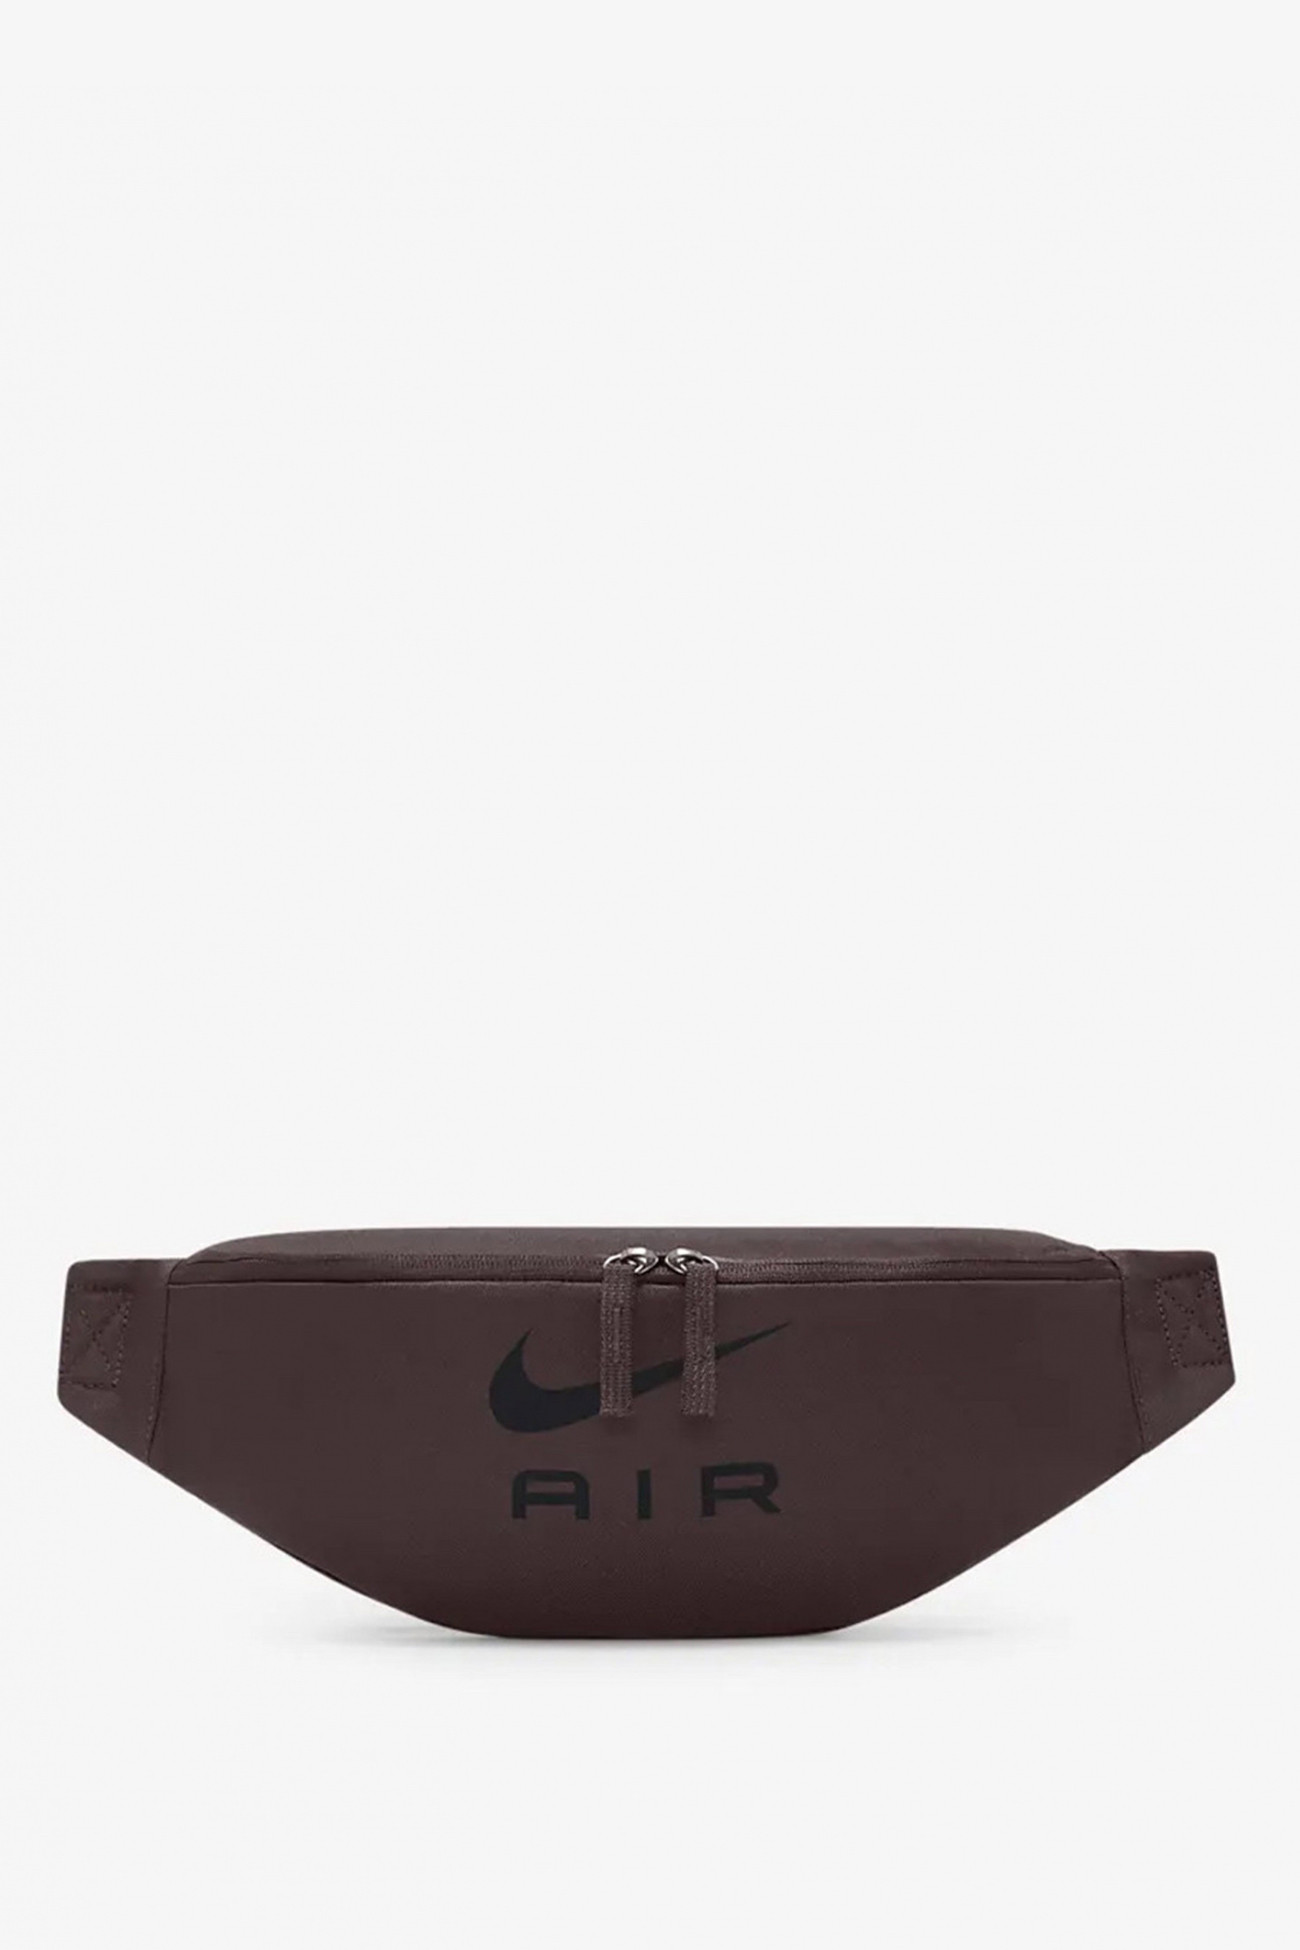 Сумка  Nike NK HERITAGE WAISTPACK - NK AIR бордовая DR6271-227